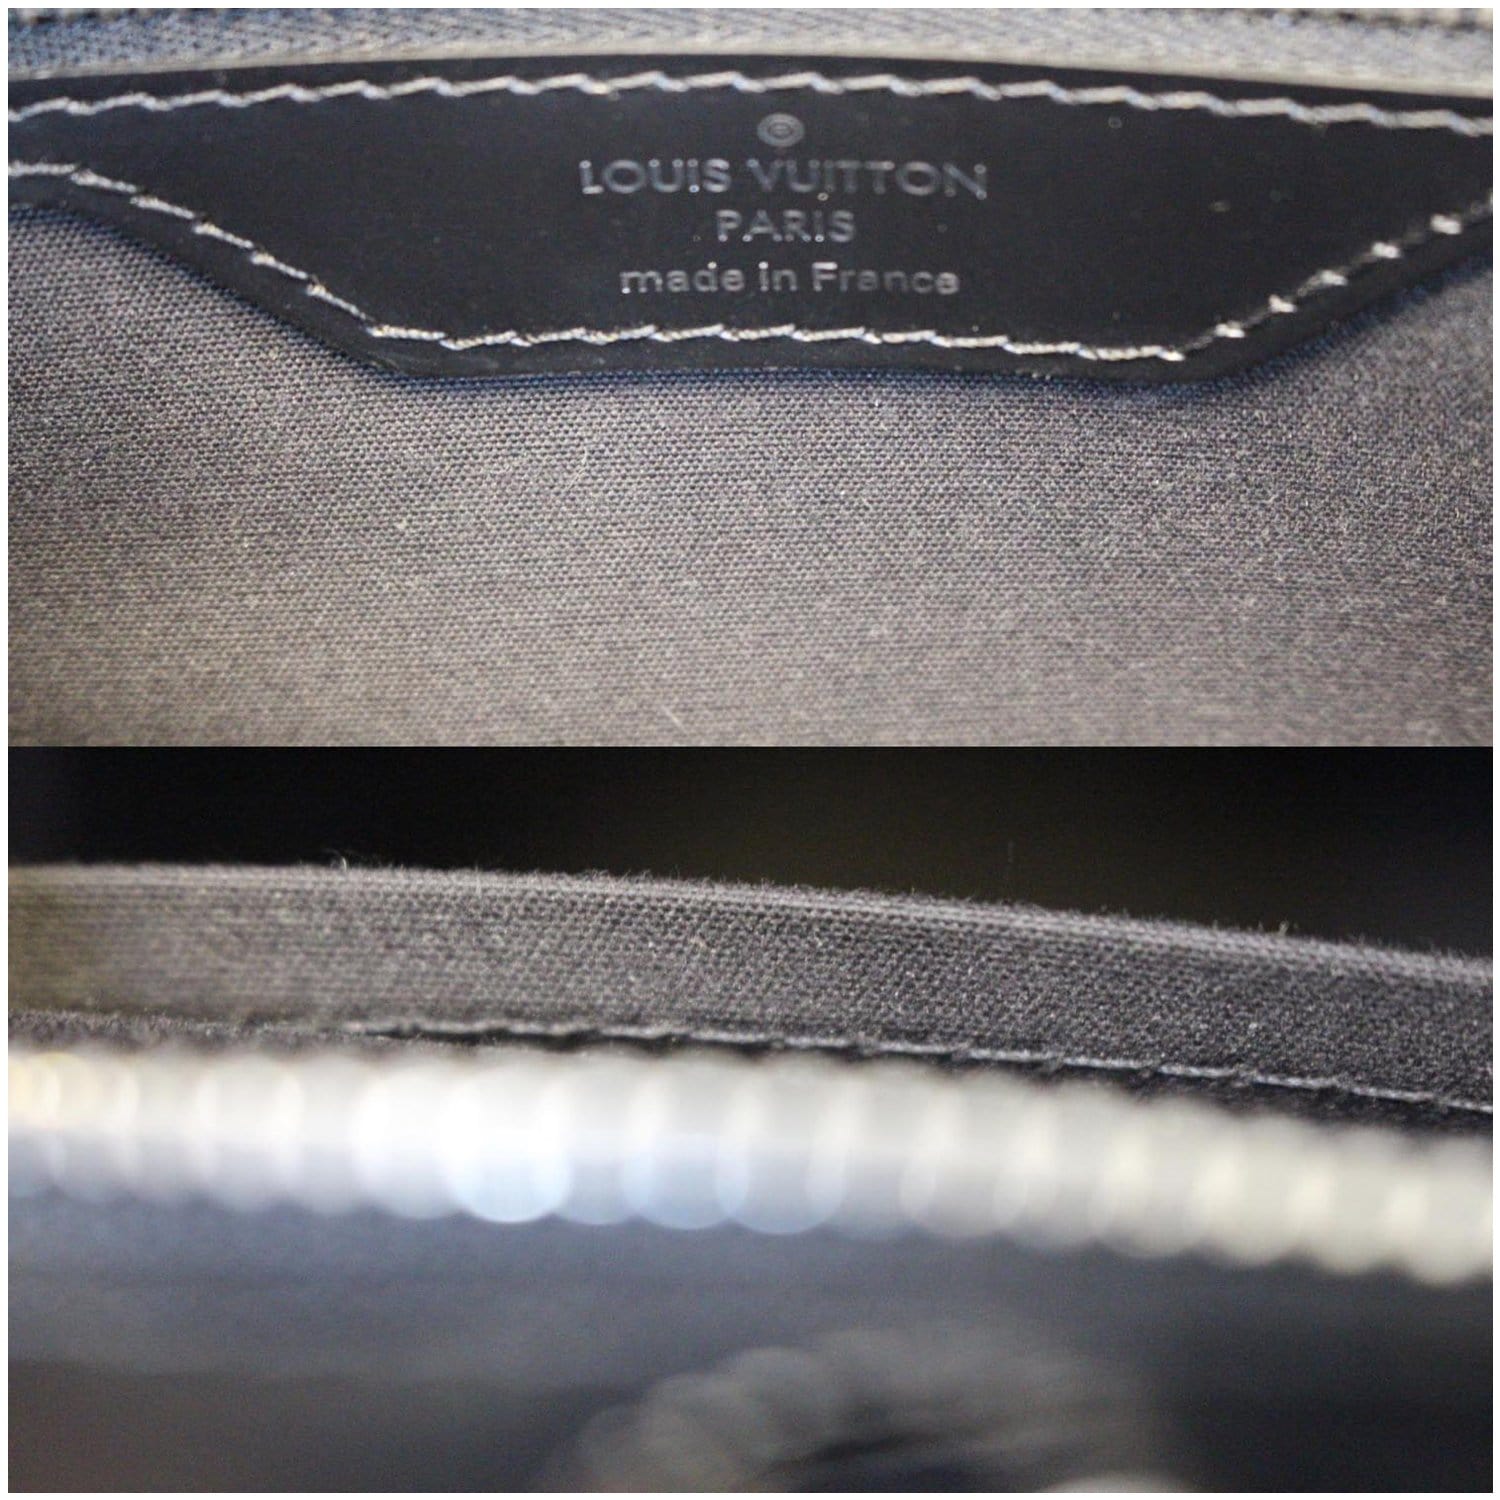 LOUIS VUITTON Brea GM Epi Leather Satchel Shoulder Bag Black-US